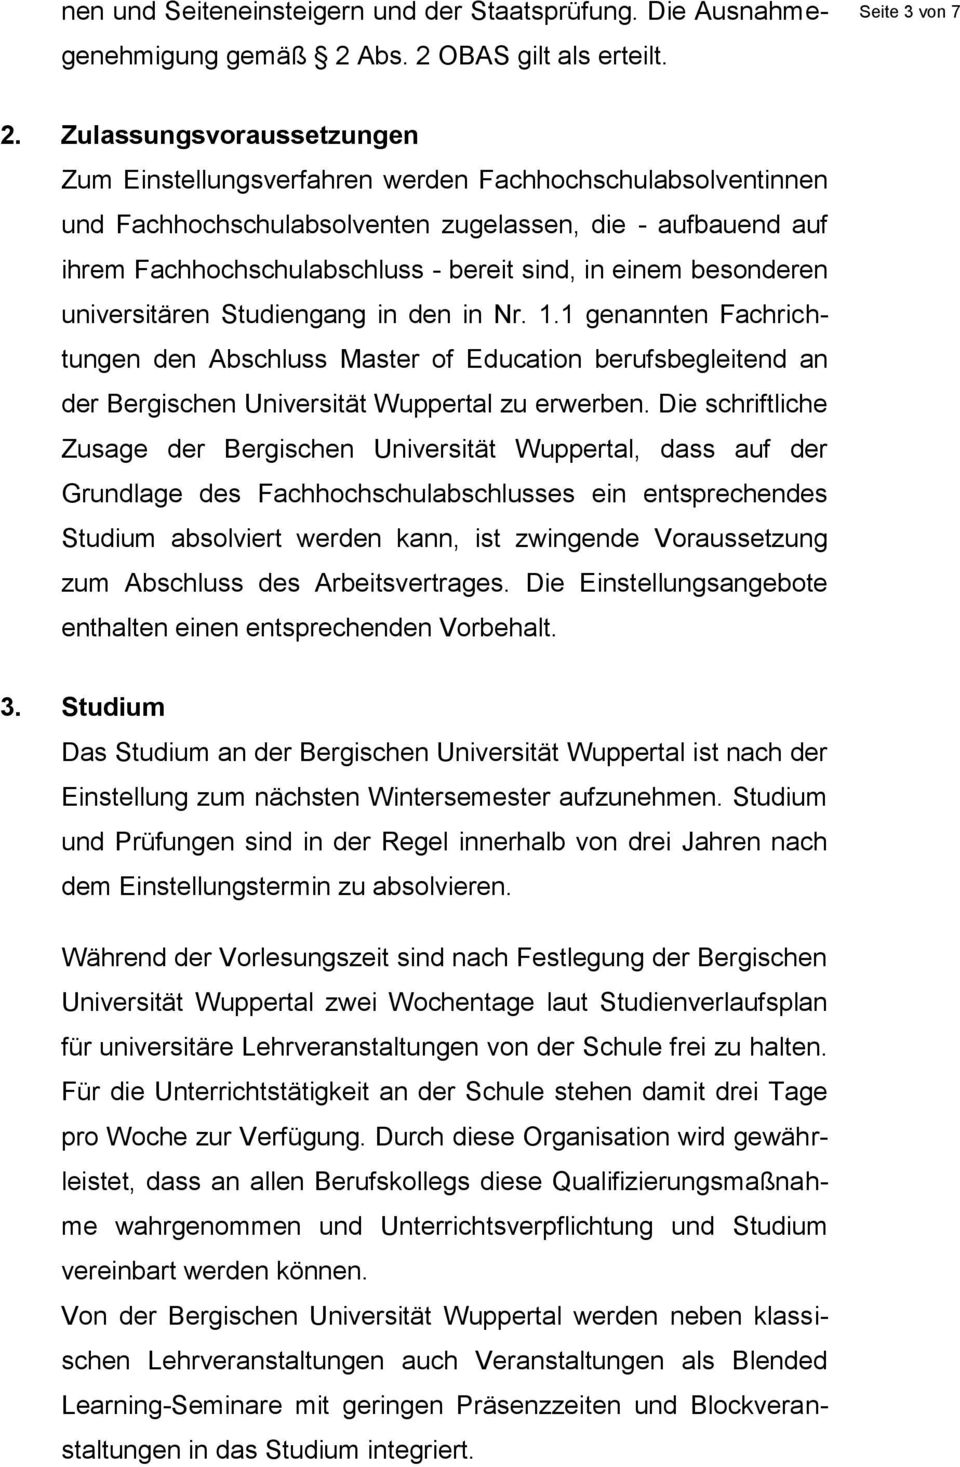 einem besonderen universitären Studiengang in den in Nr. 1.1 genannten Fachrichtungen den Abschluss Master of Education berufsbegleitend an der Bergischen Universität Wuppertal zu erwerben.